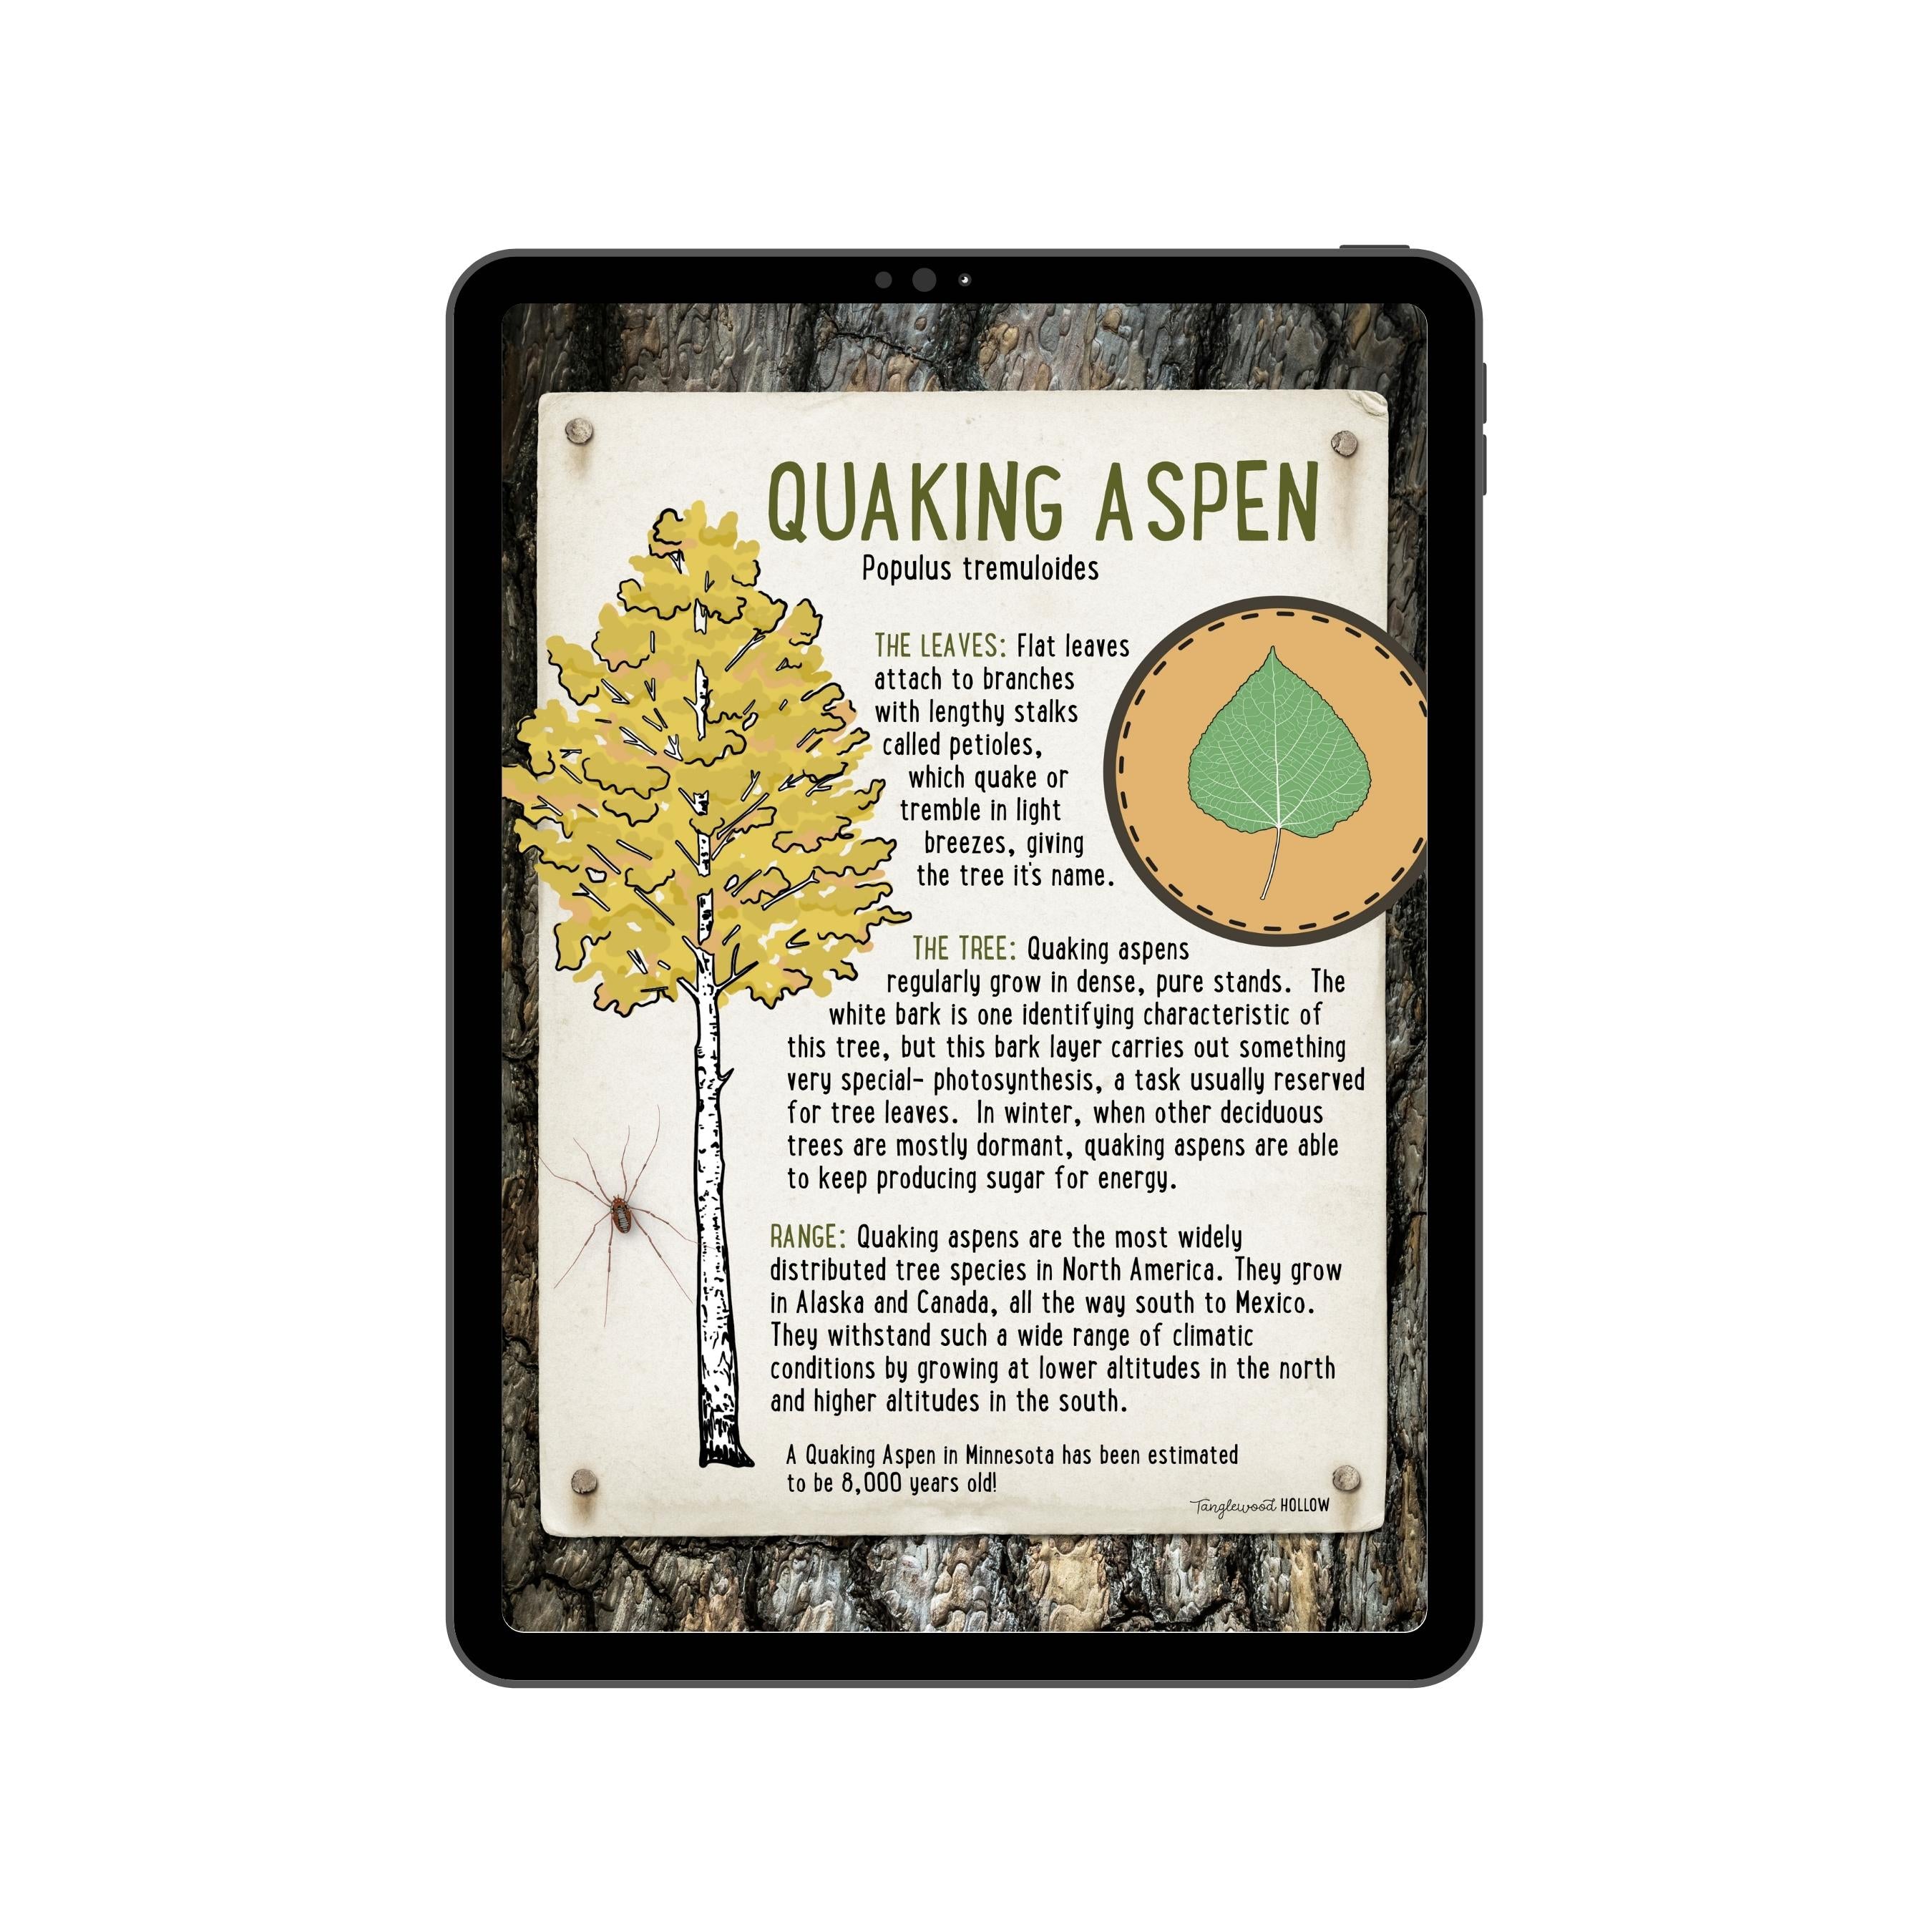 Exploring Quaking Aspen - A Digital Guide